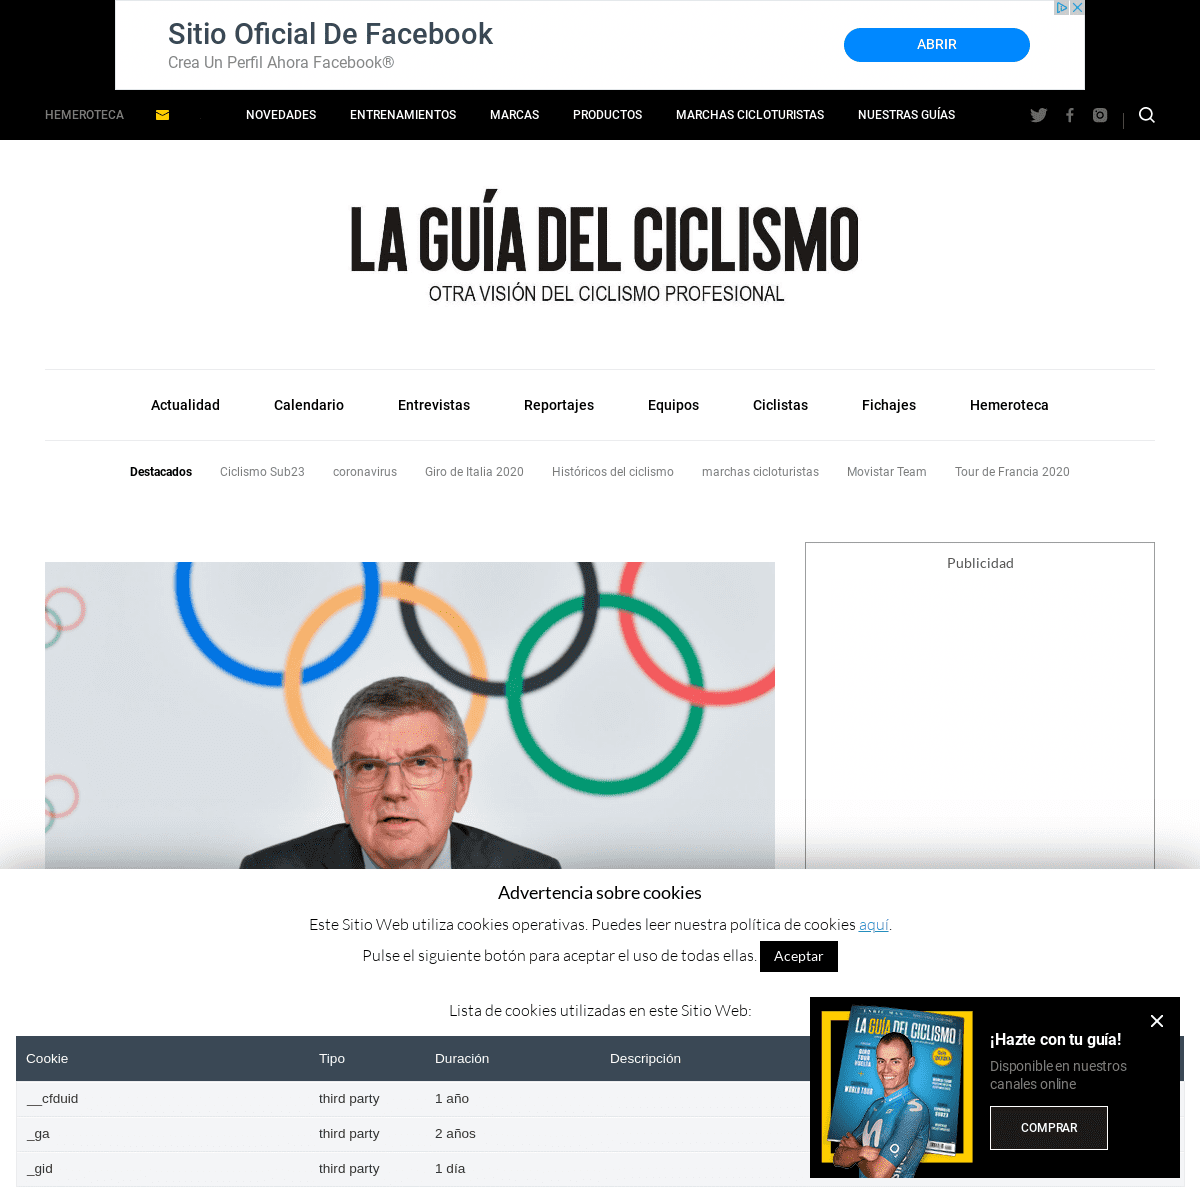 A complete backup of laguiadelciclismo.com